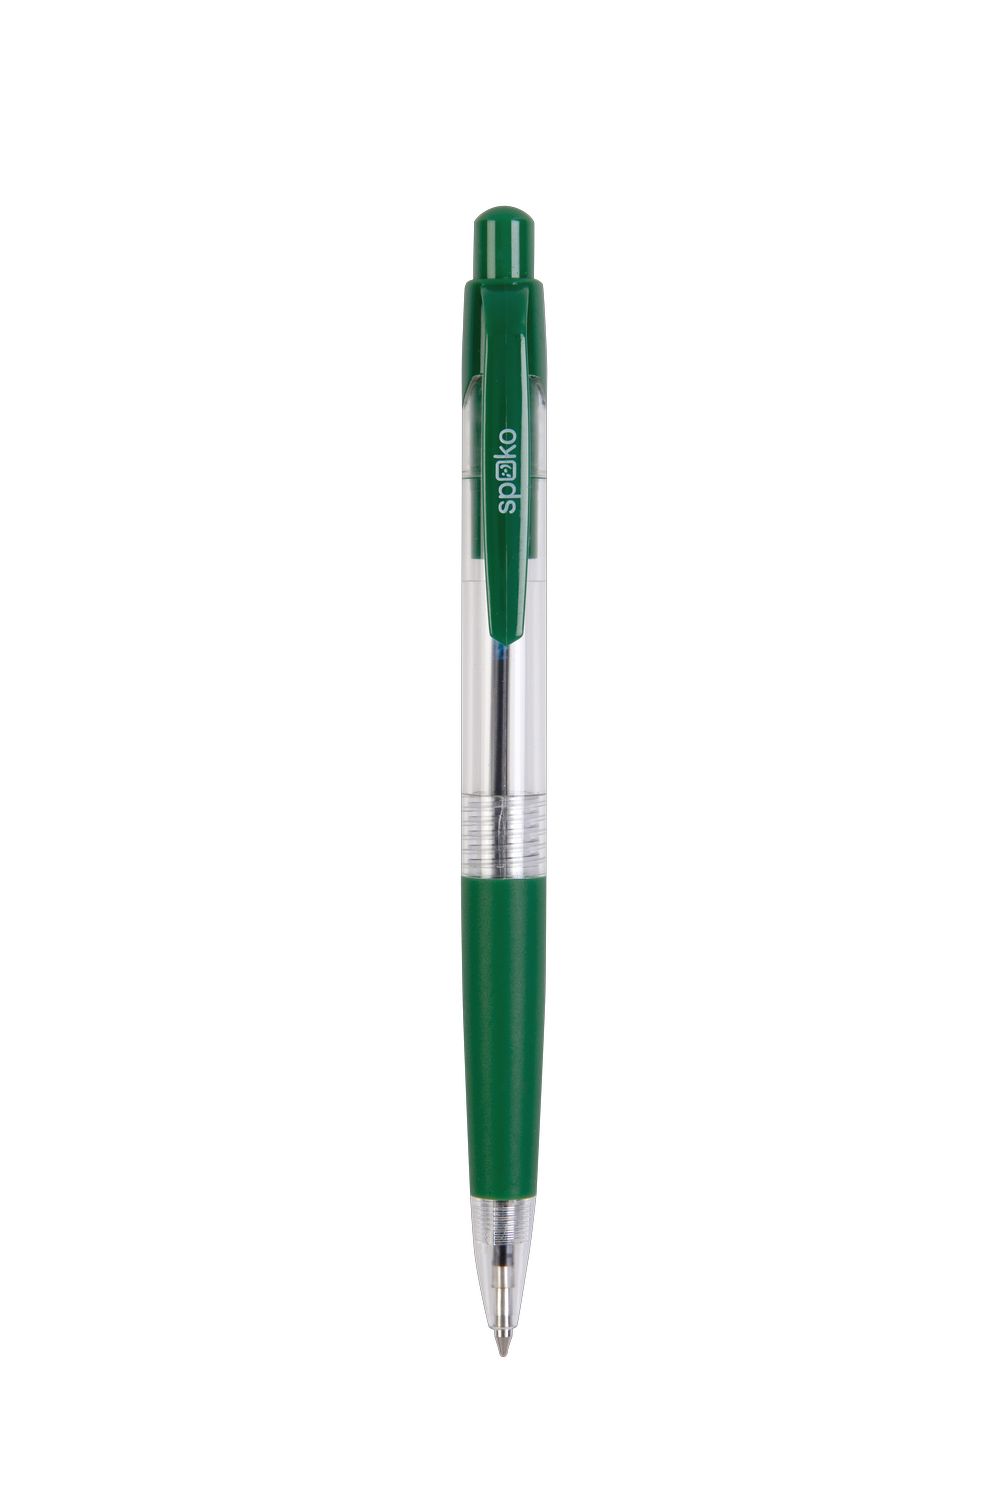 Pero kuličkové COLOMBO transparentní zelené